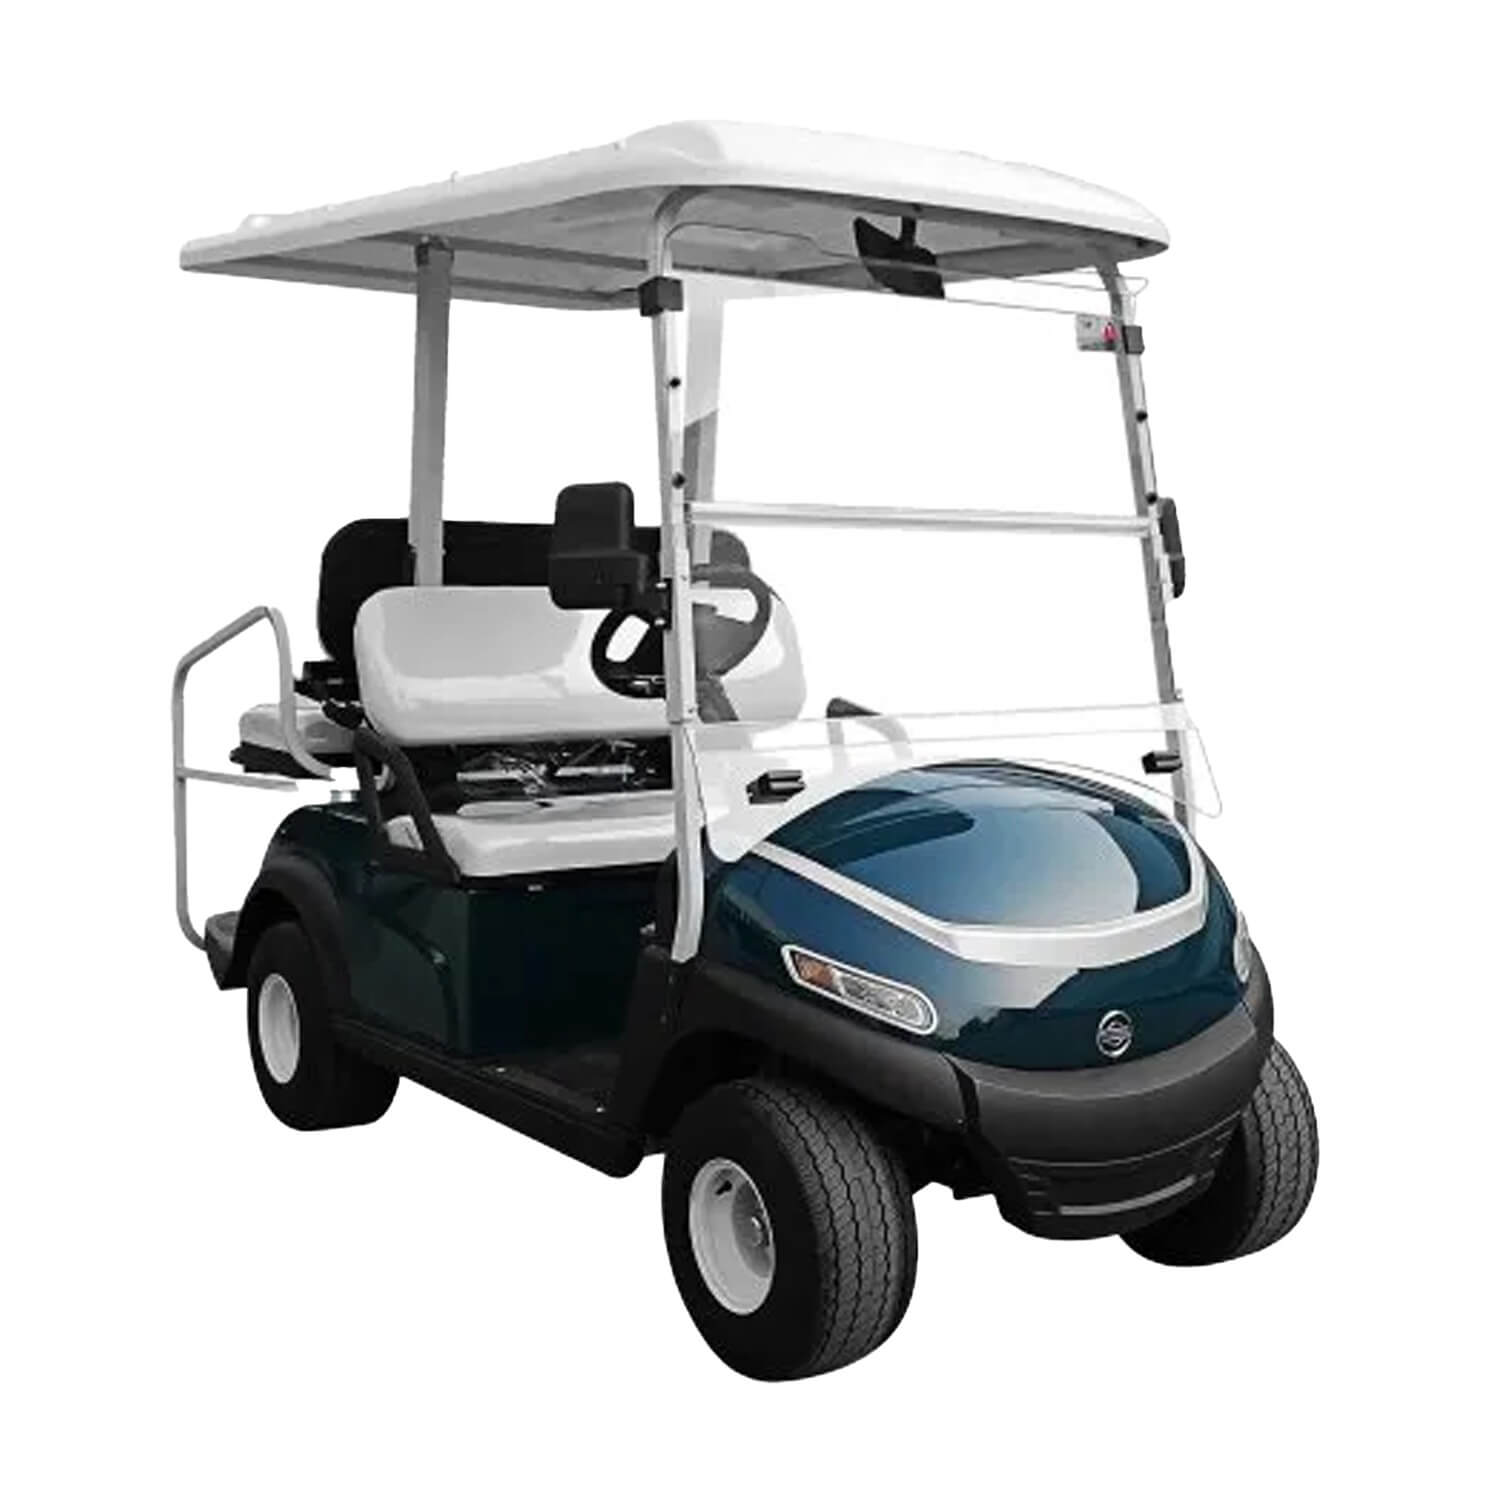 Megawheels Golf club car 2+ 2 Flip seaters electric golf cart-Green